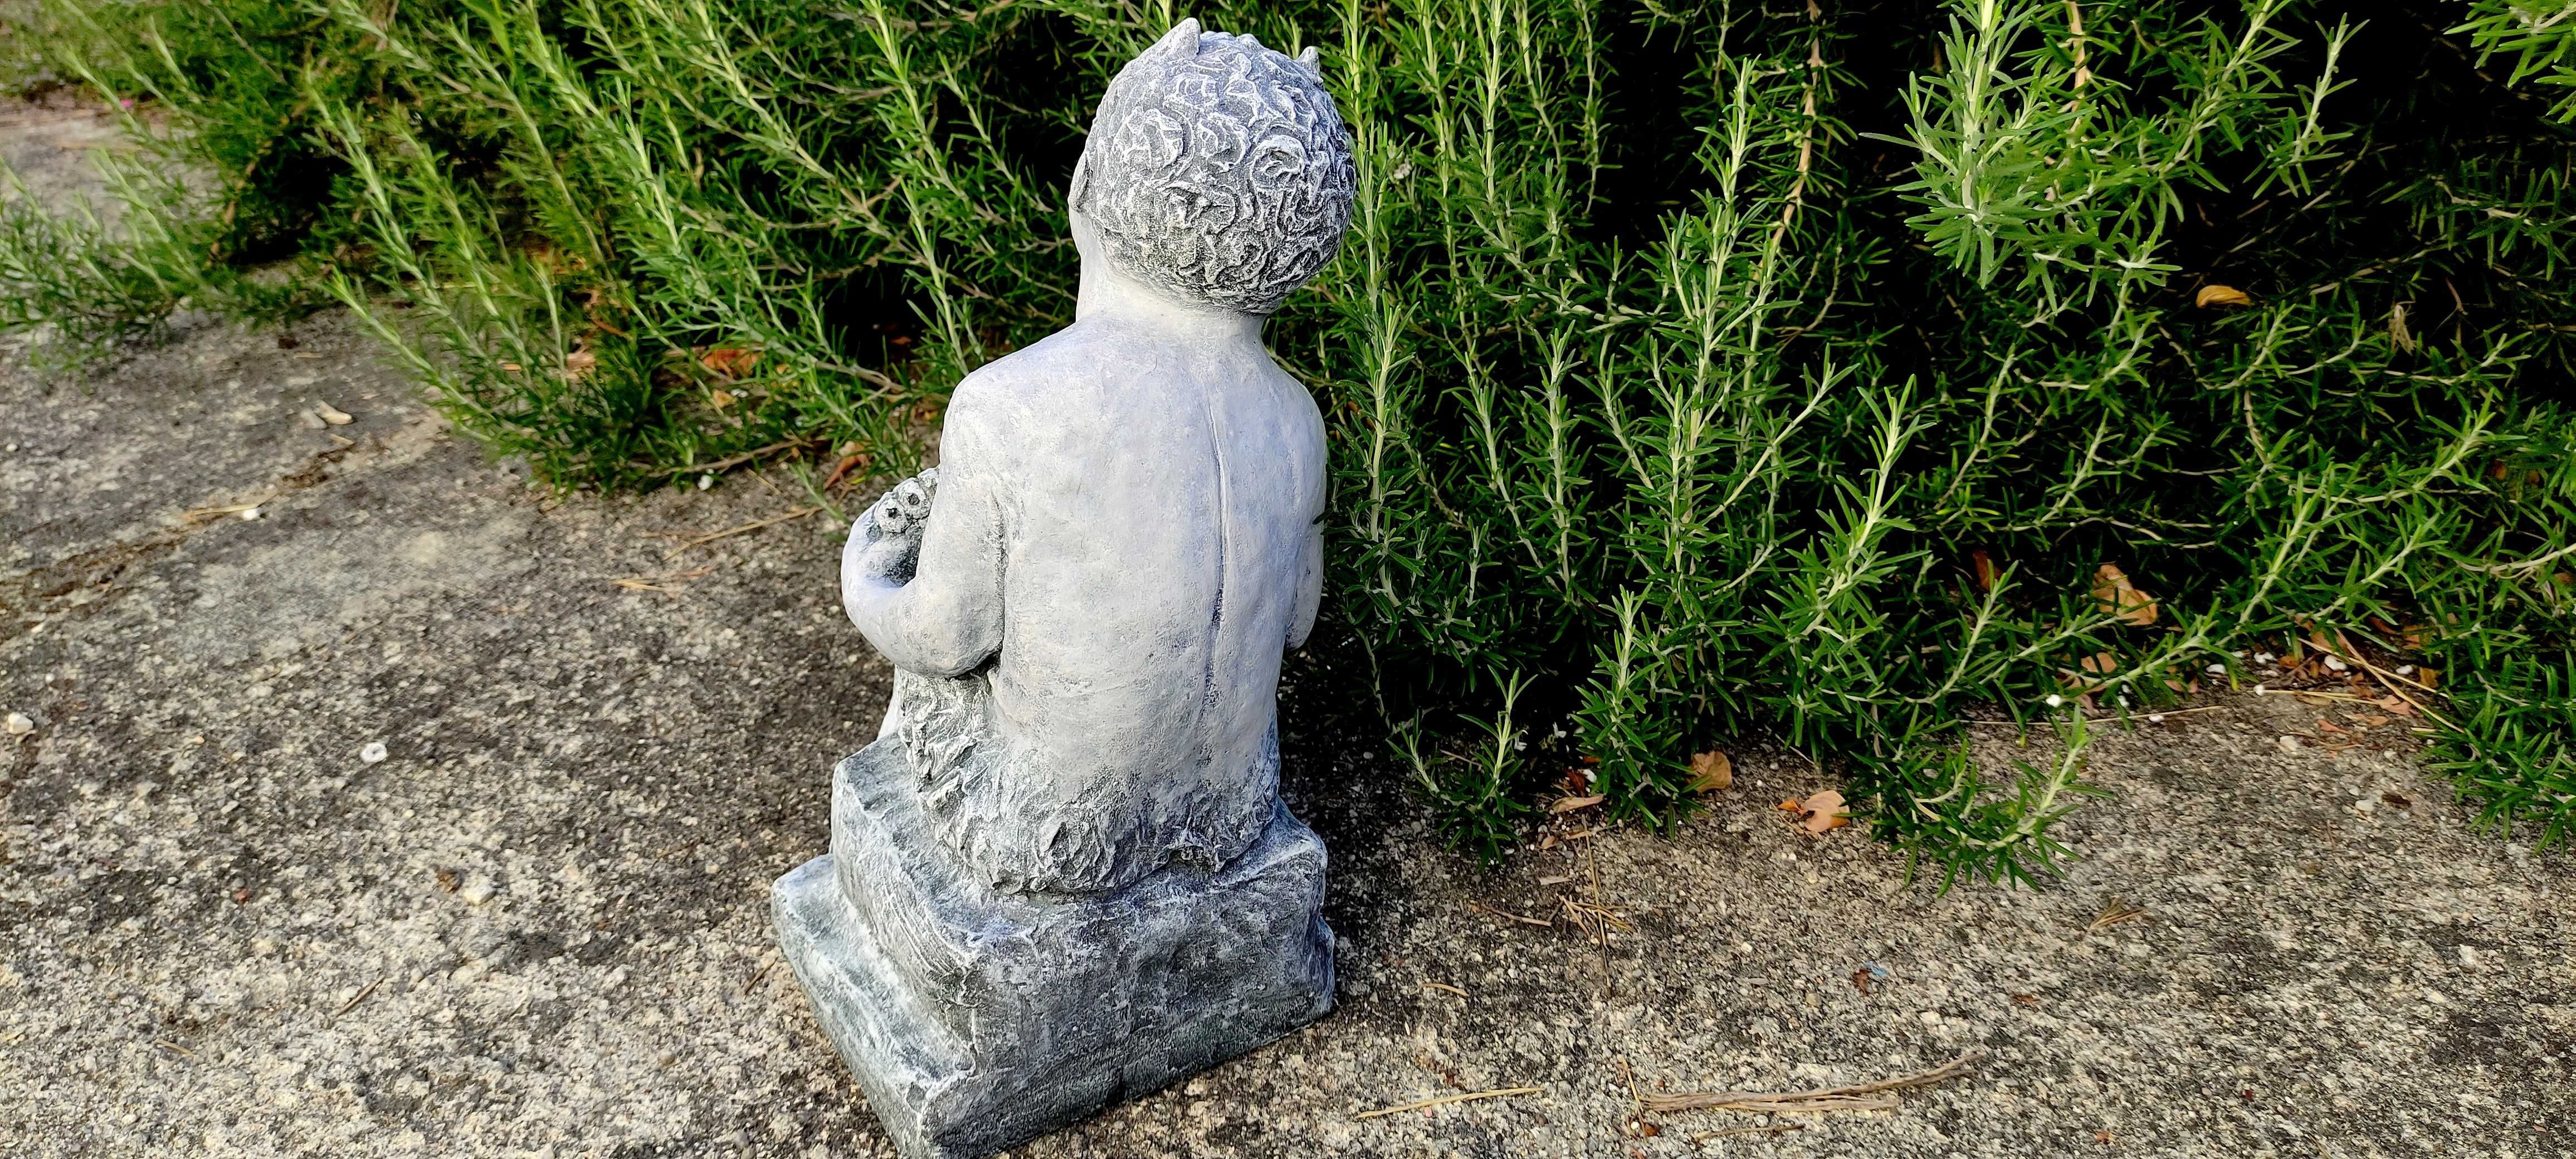 Pã (deus dos bosques) - decoração em pedra